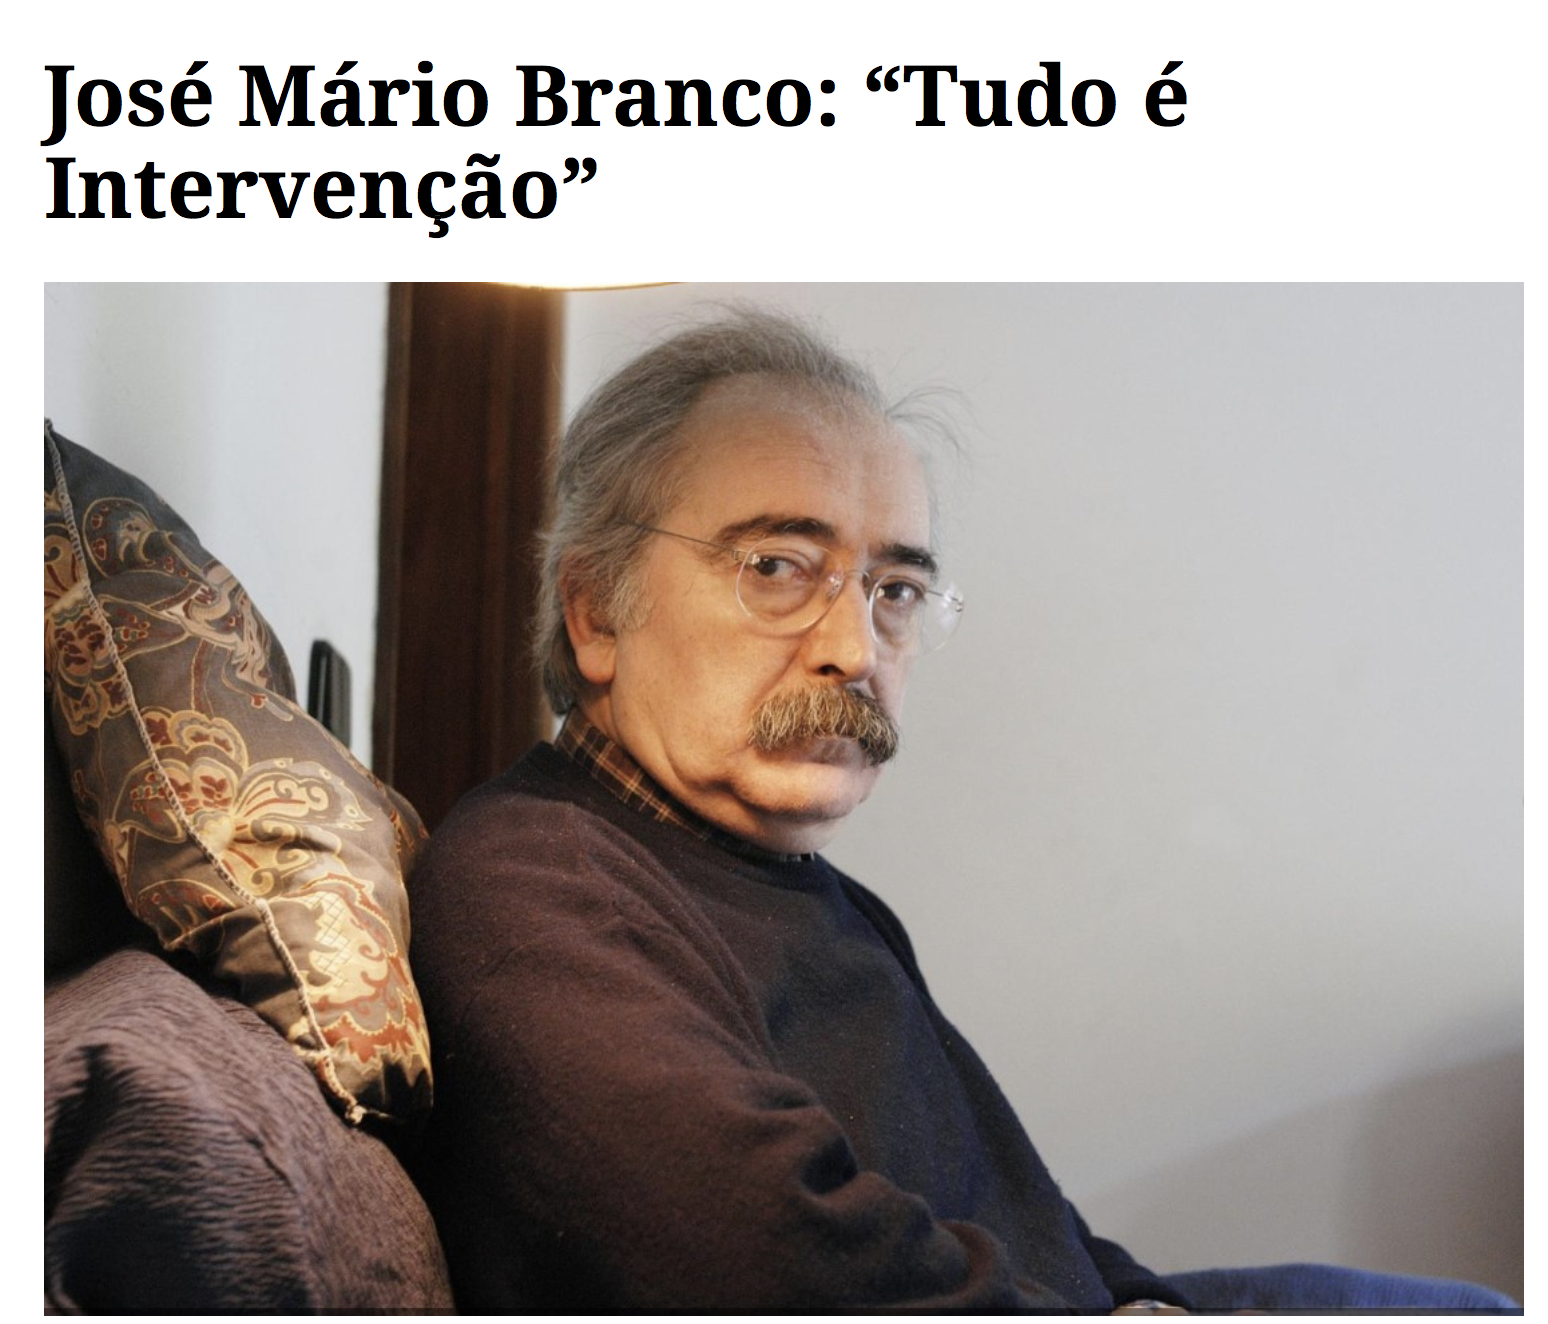 "José Mário Branco: “Tudo é Intervenção”"